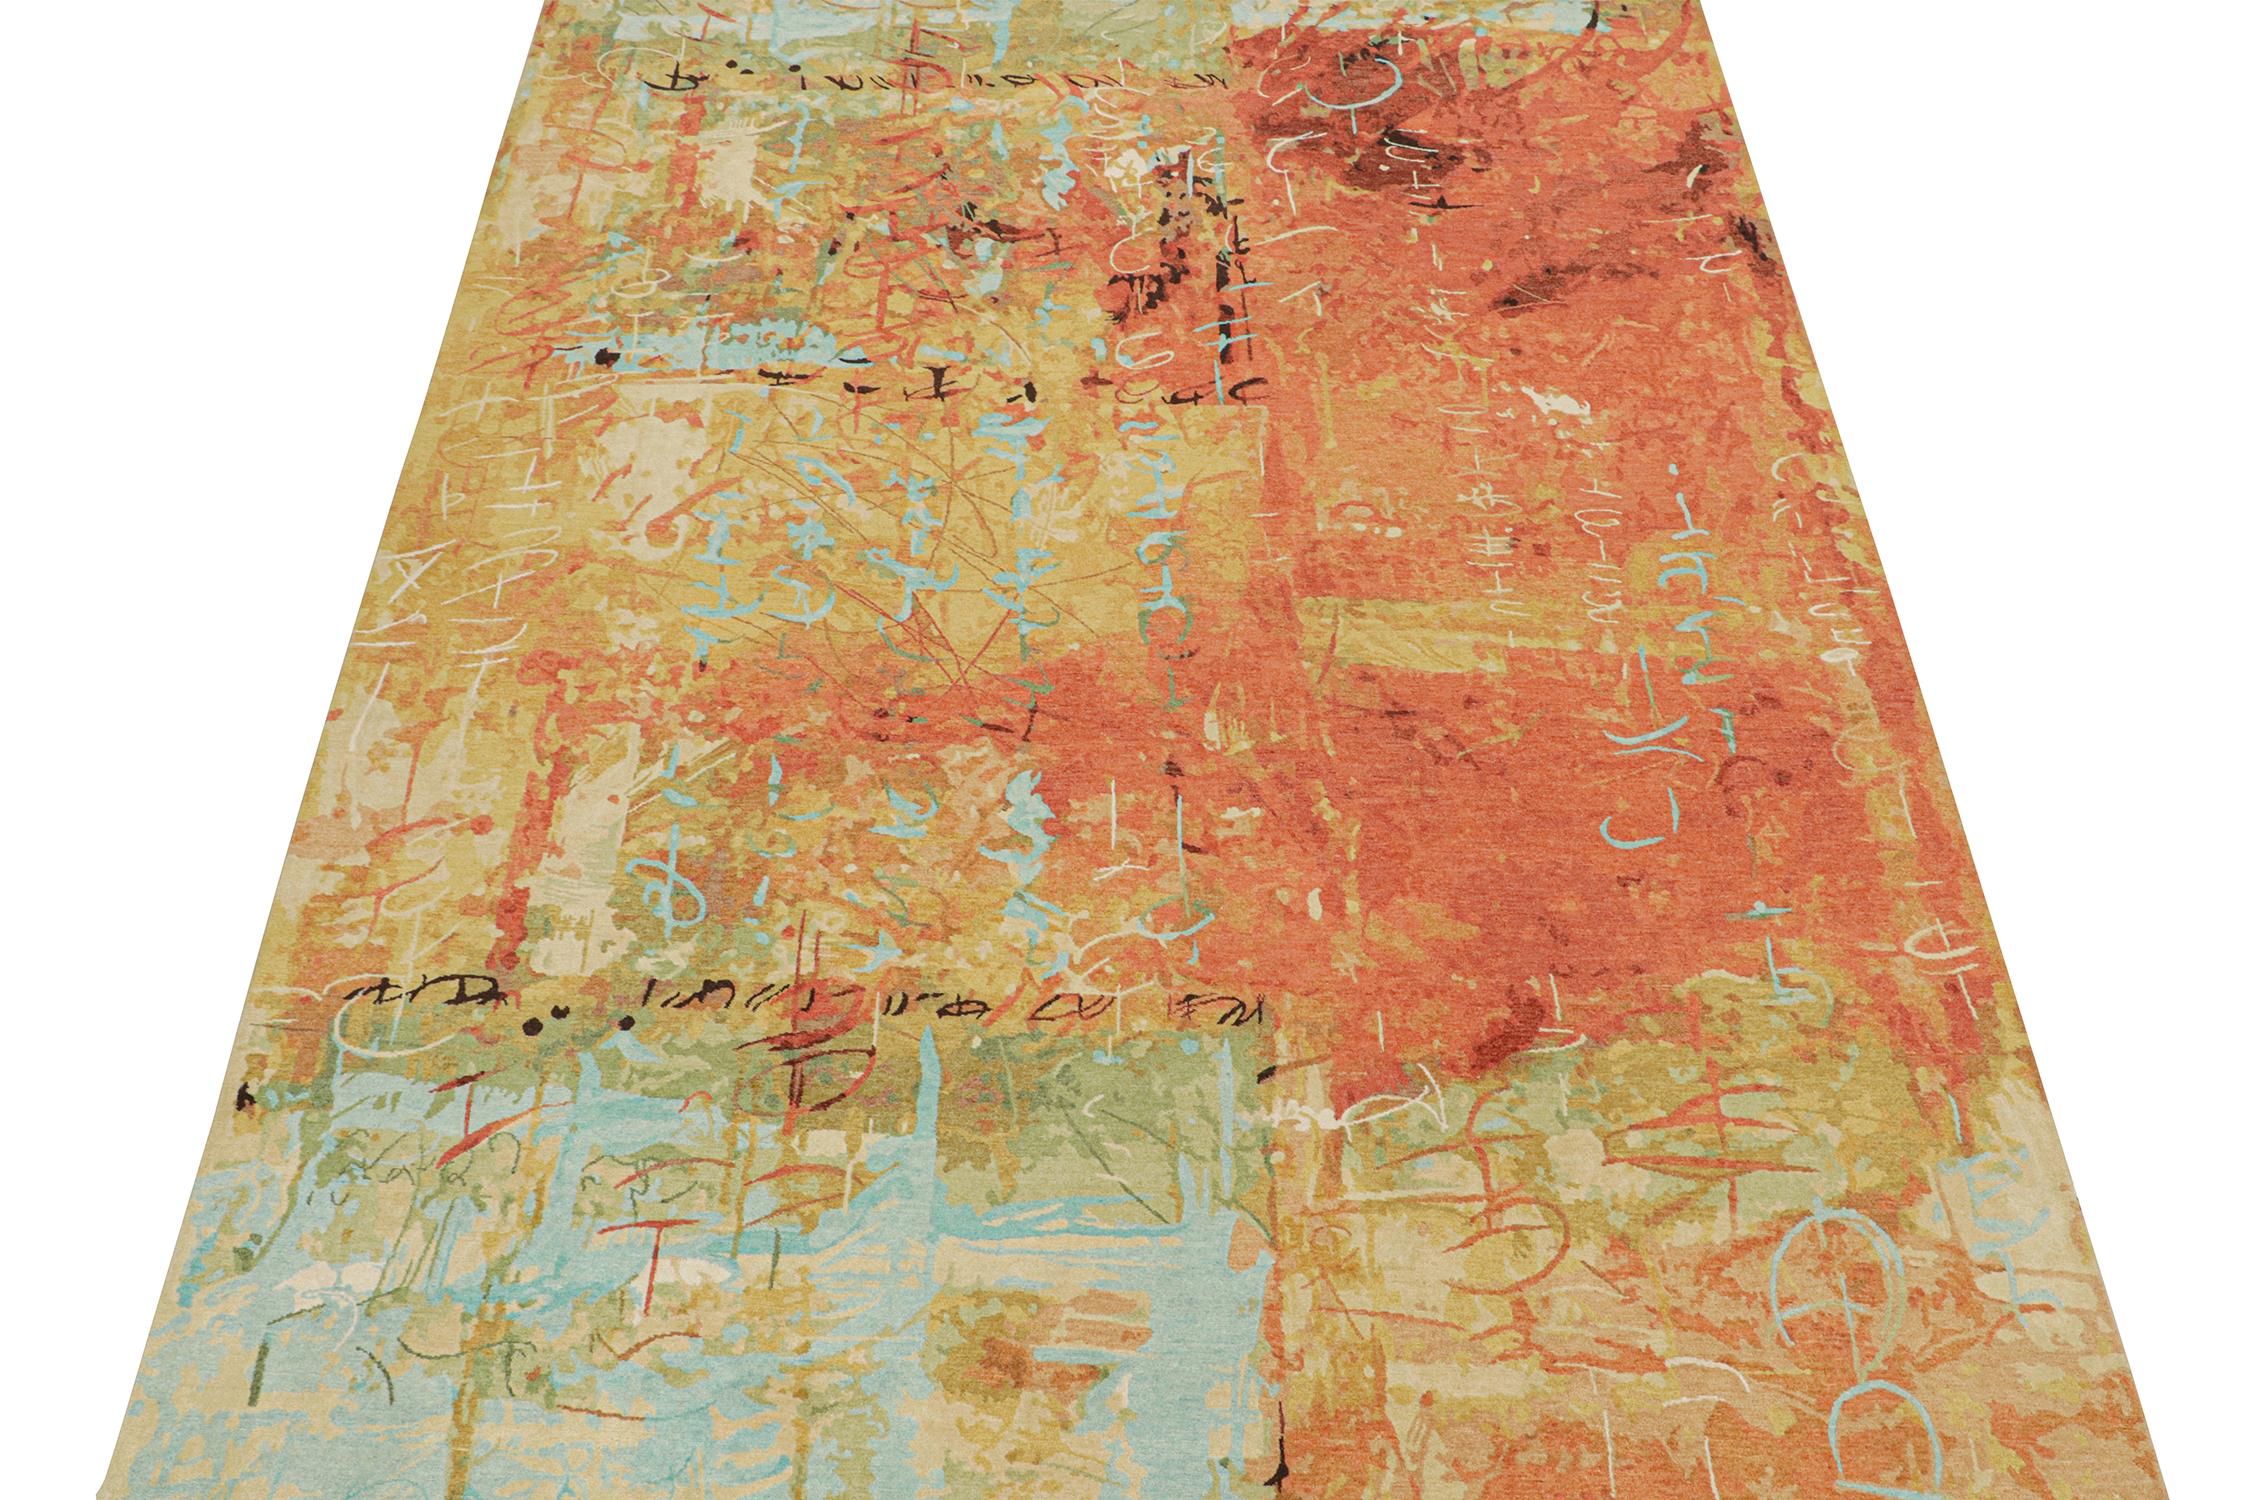 Ce tapis abstrait de 9x12 est un nouvel ajout audacieux à la collection de tapis modernes de Rug & Kilim. Noué à la main en laine et en soie, son design s'inspire des sensibilités expressionnistes dans une qualité haut de gamme exceptionnelle.

Plus